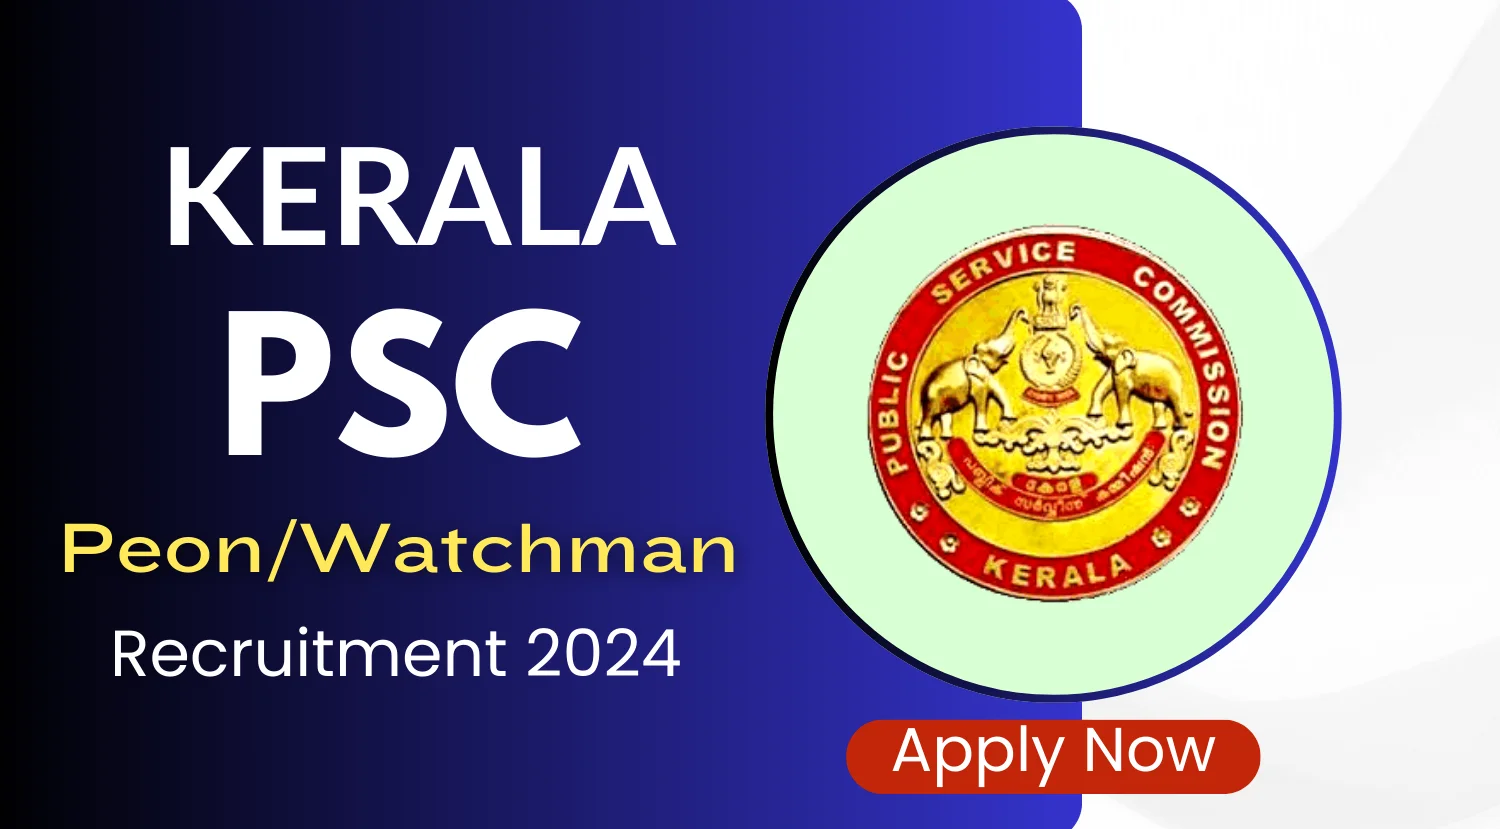 Kerala PSC Peon/Watchman Recruitment 2024 